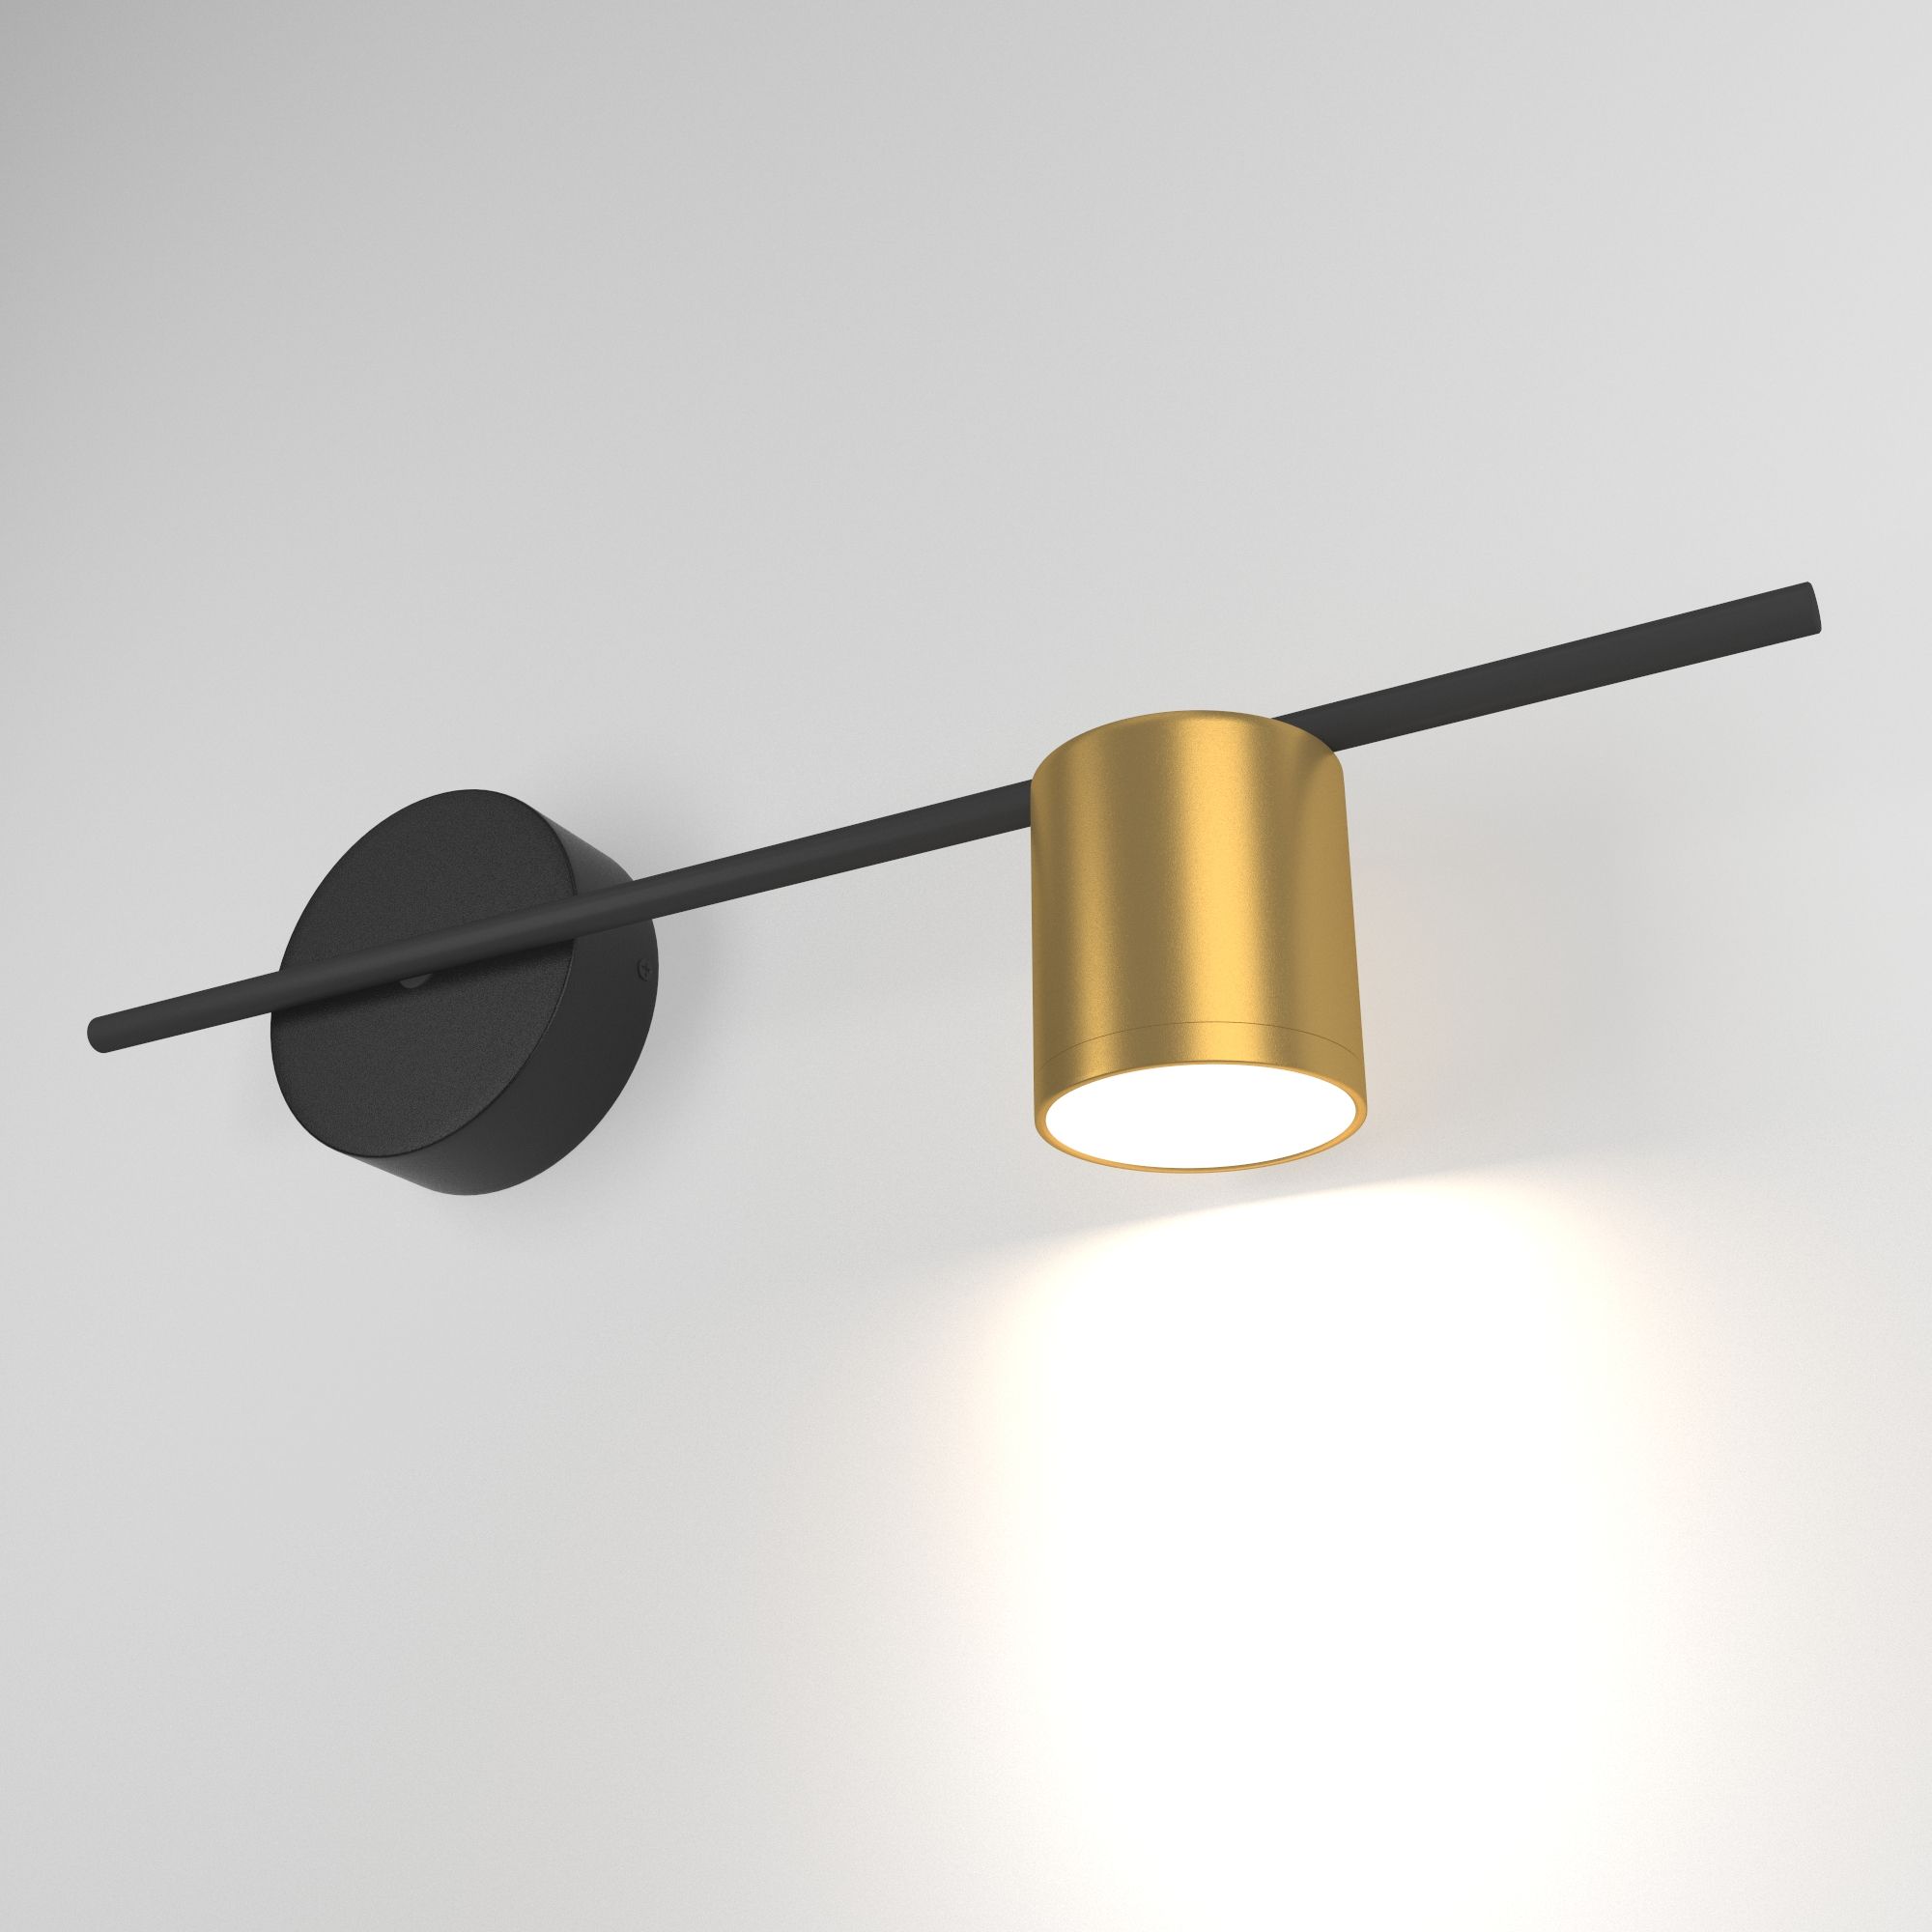 Настенный светодиодный светильник  Acru LED Elektrostandard Acru MRL LED 1019 черный/золото. Фото 1